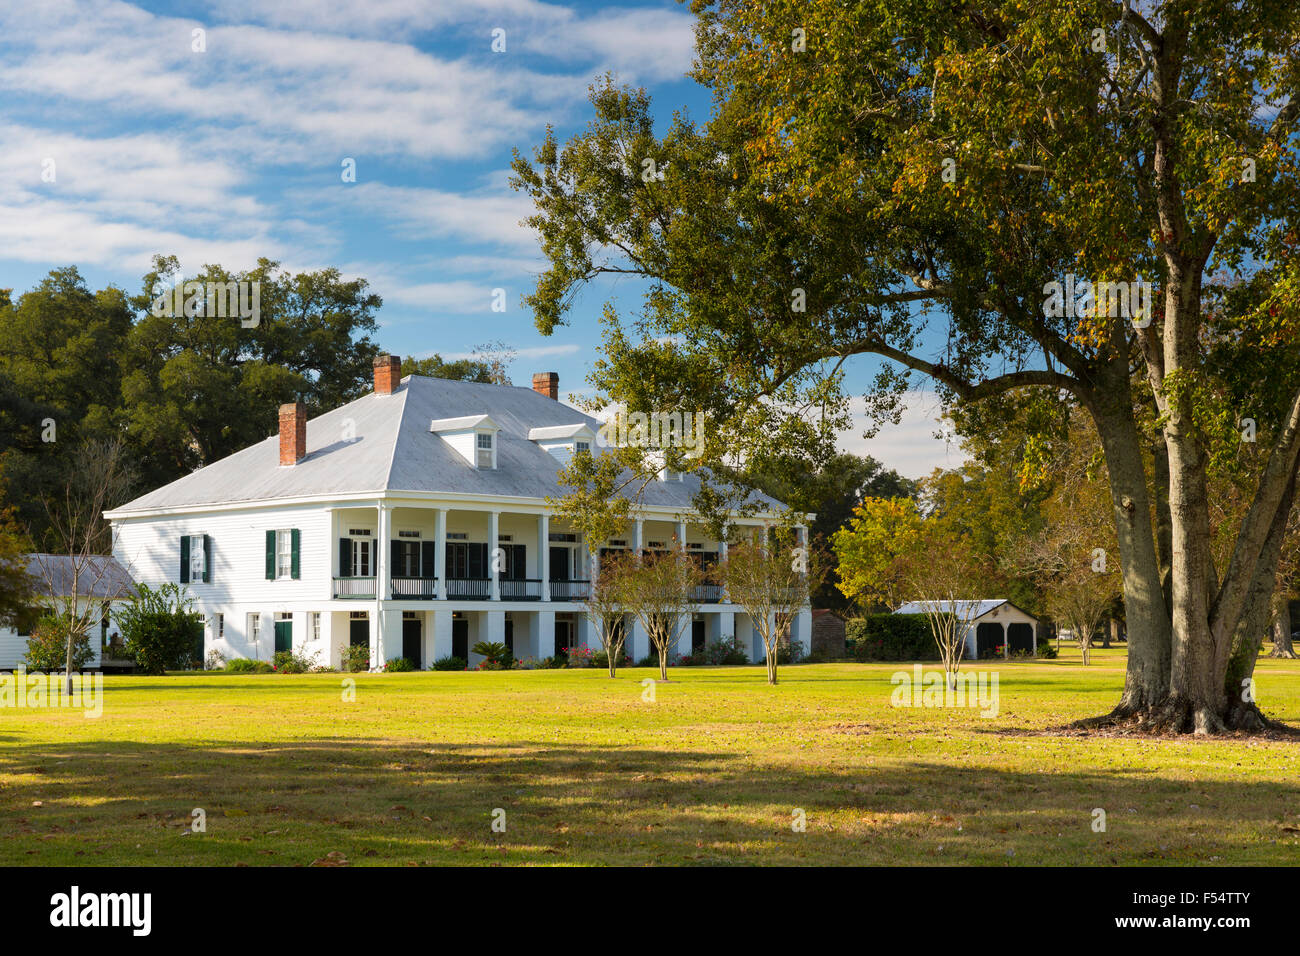 Plantation St Joseph 19e siècle antebellum mansion house au bord du Mississippi à vacherie, Louisiana, USA Banque D'Images